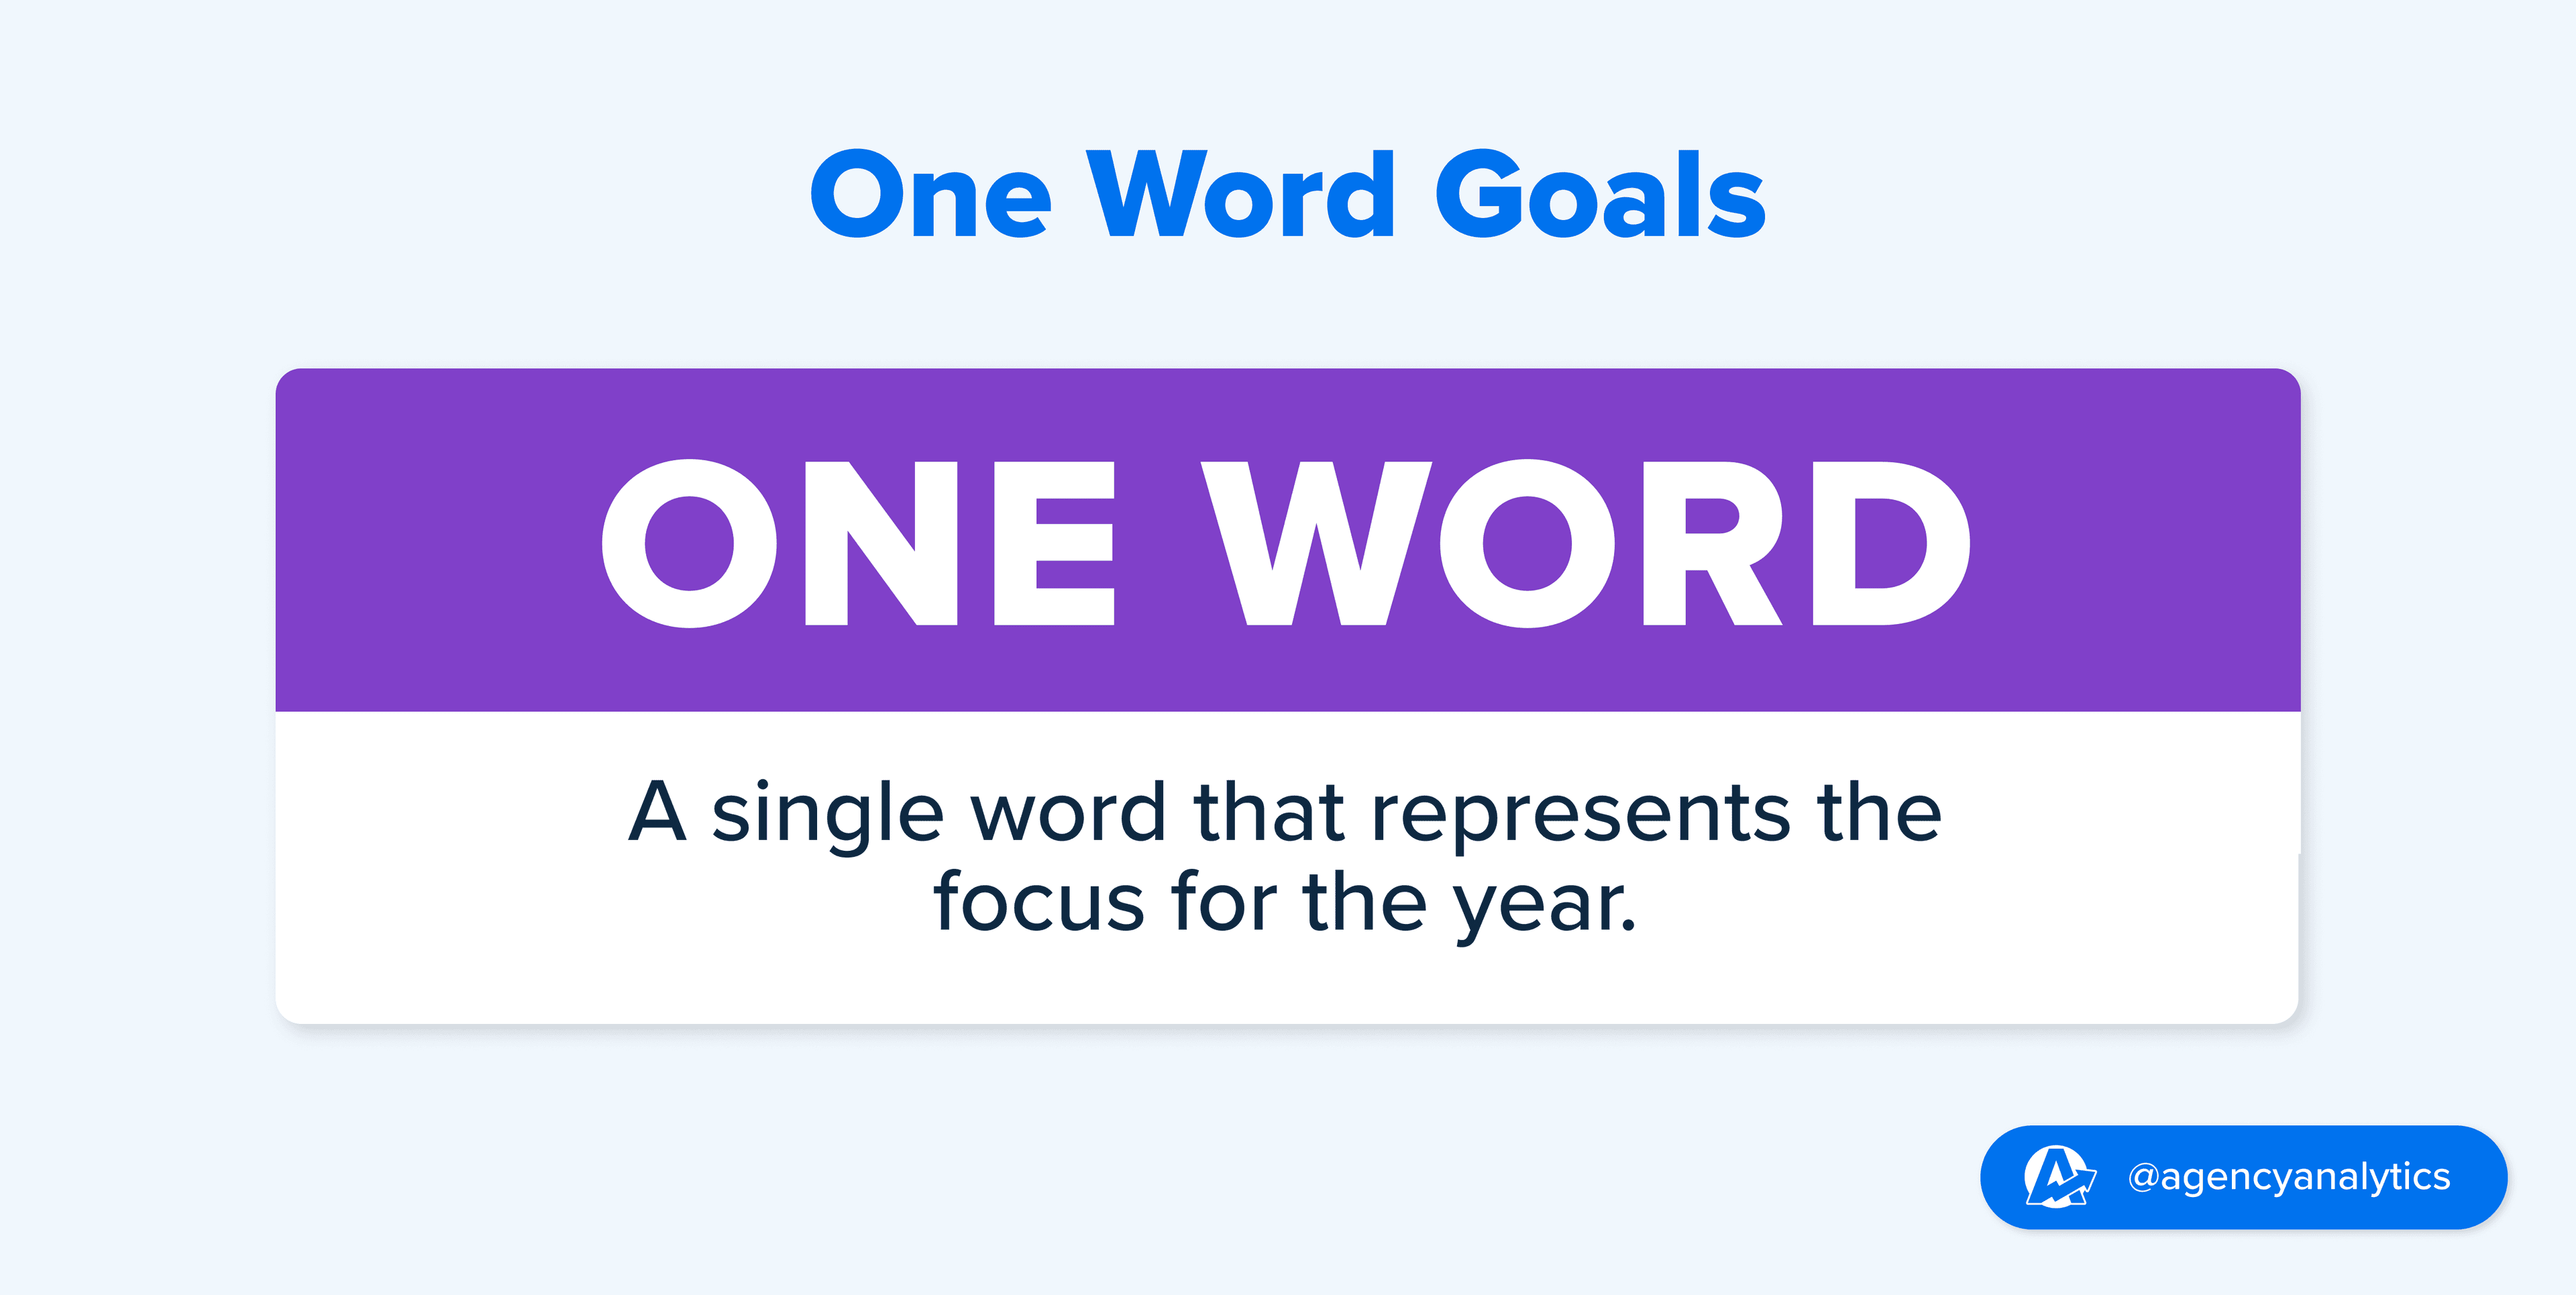 Illustration of the One Word Goal Setting Framework